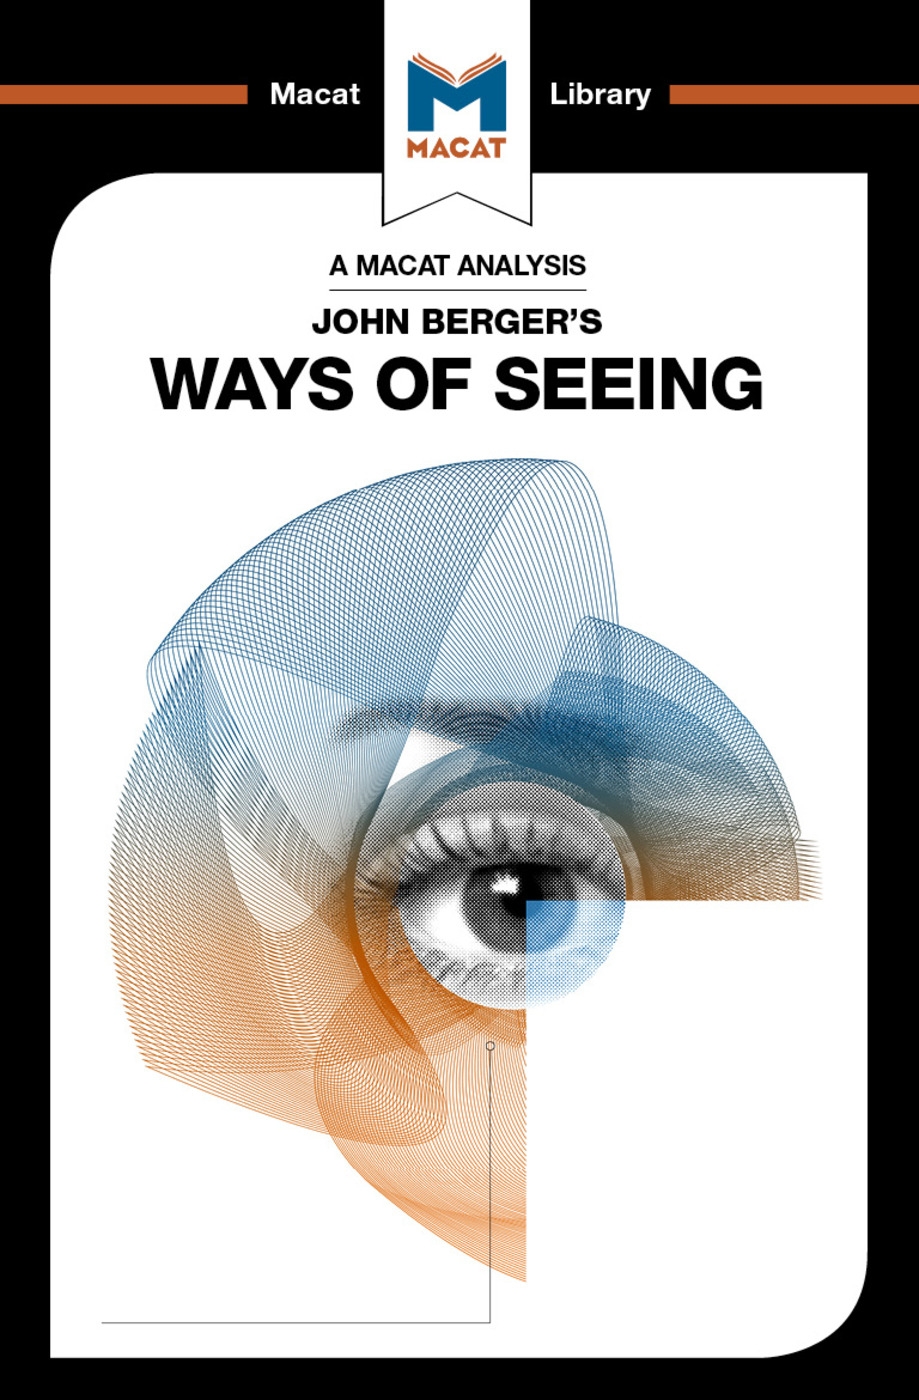 John Berger’s Ways of Seeing